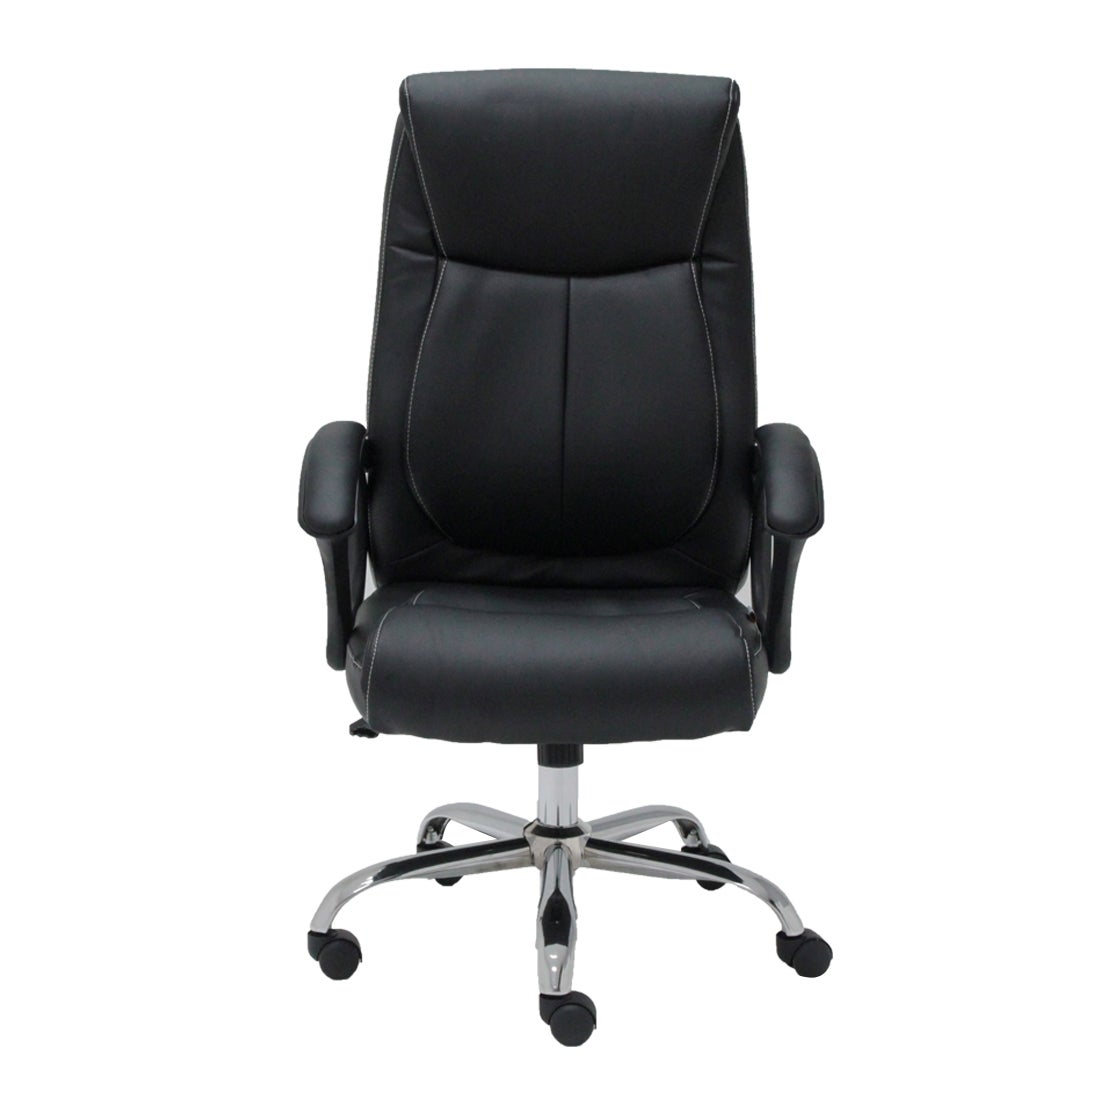 เก้าอี้สำนักงาน รุ่น Laber#2 สีดำ1